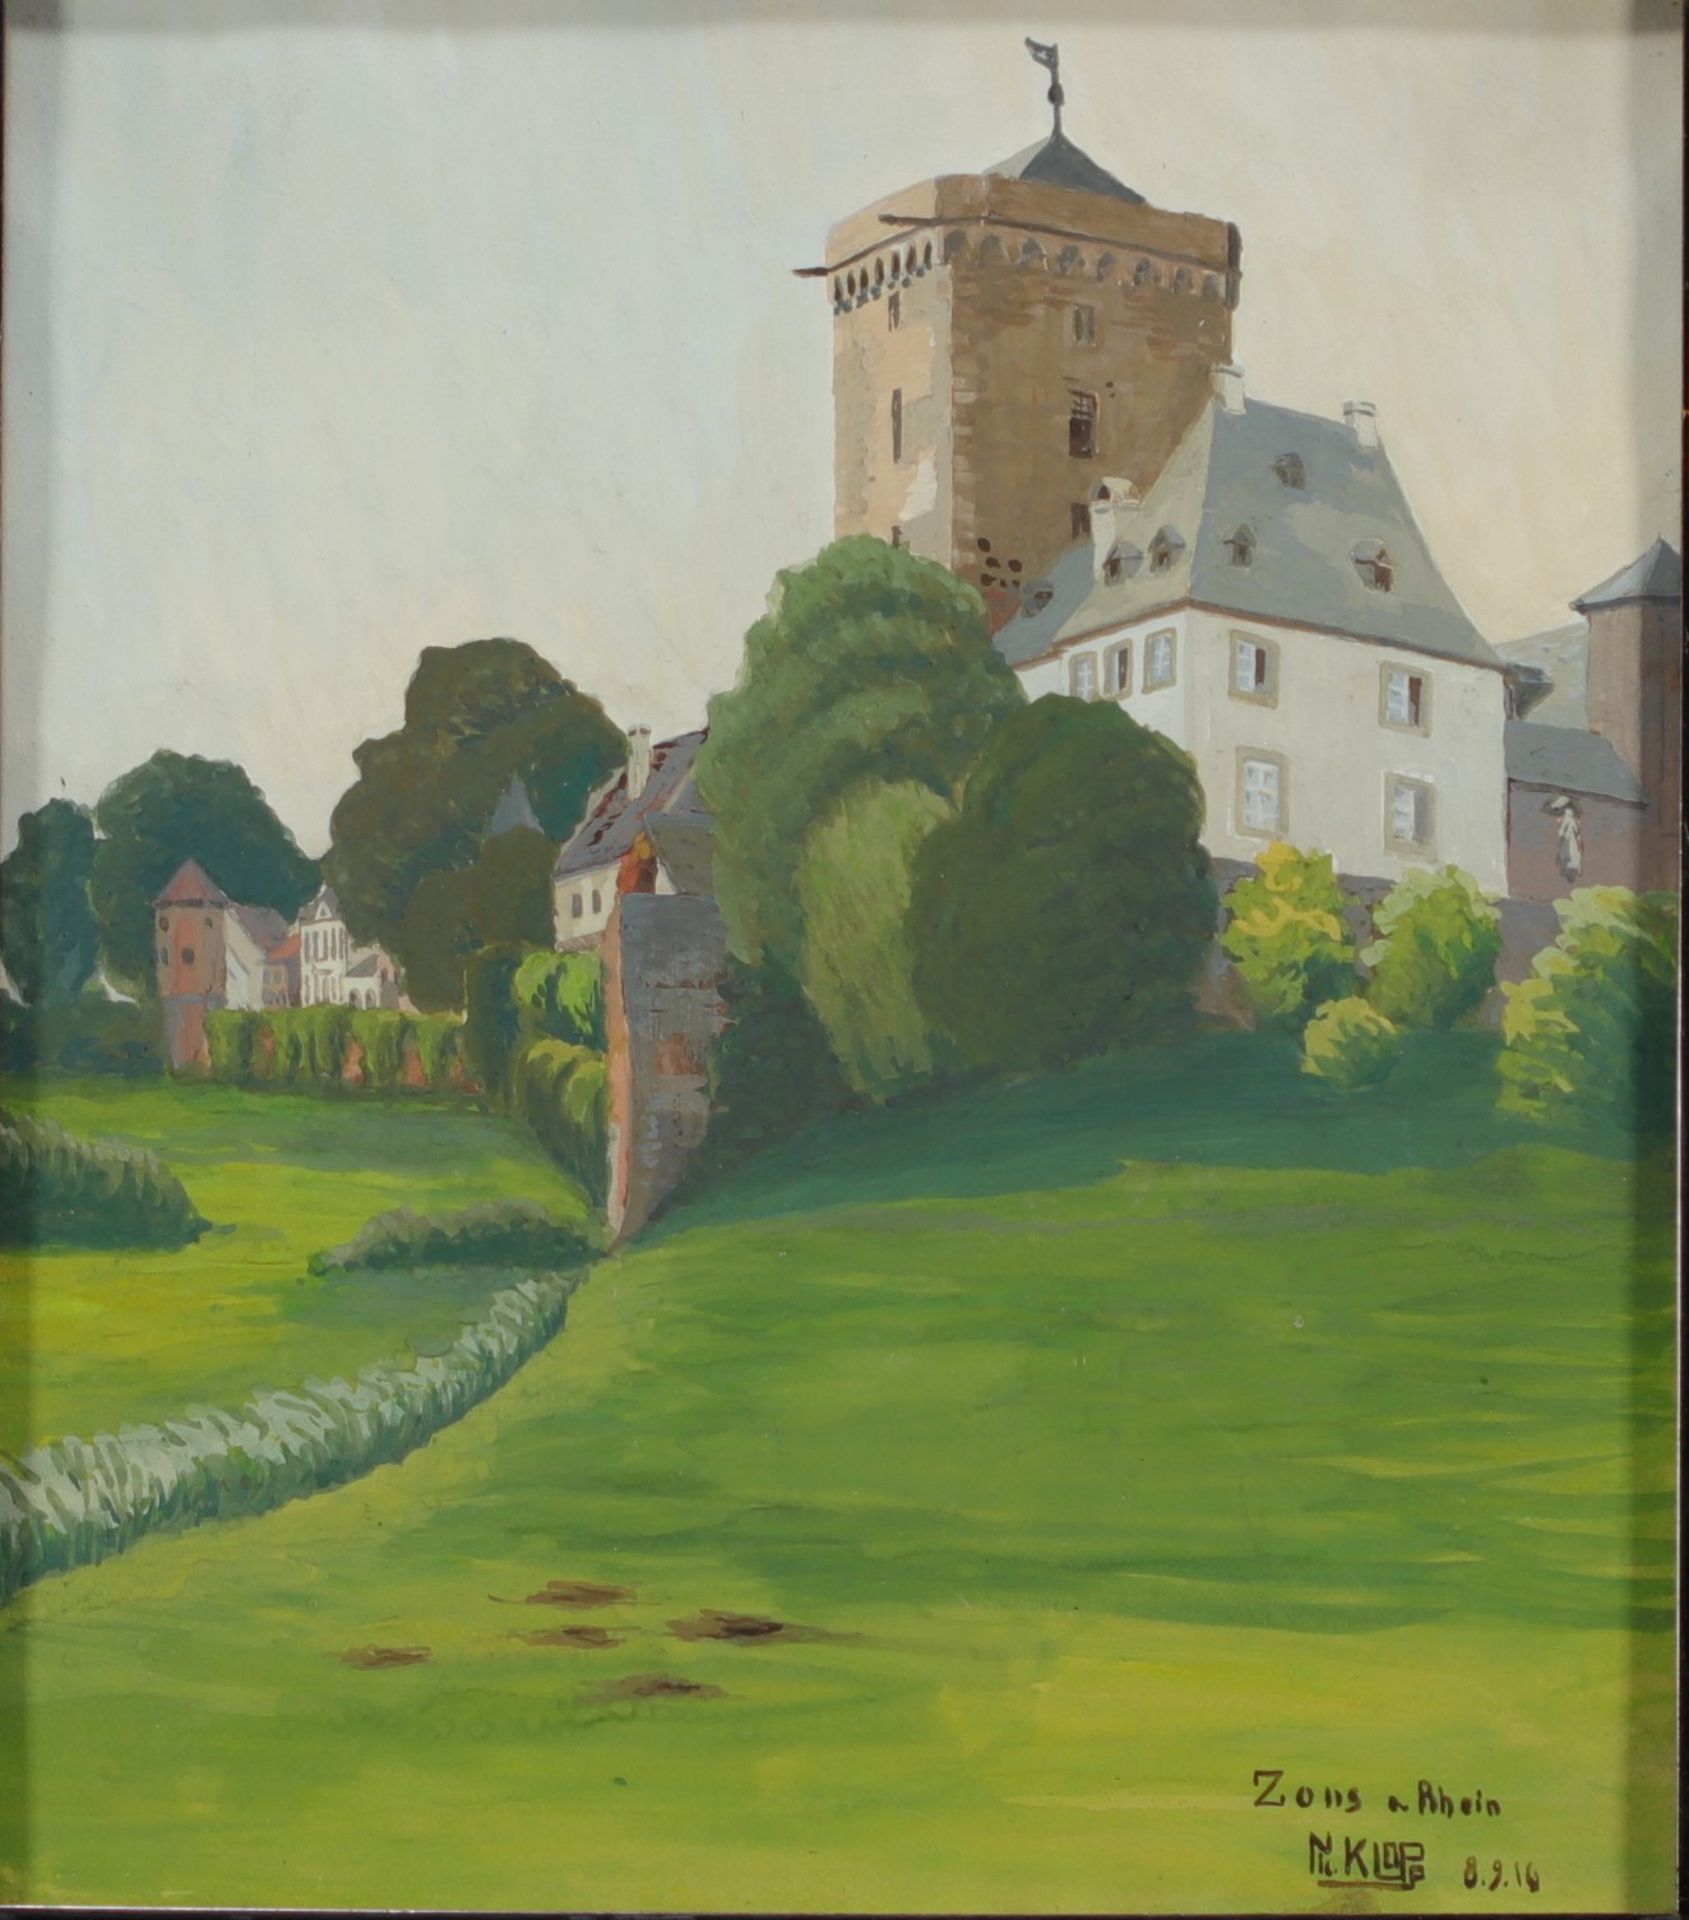 Nico KLOPP (1894-1930) "Zons am Rhein". Watercolour and gouache.